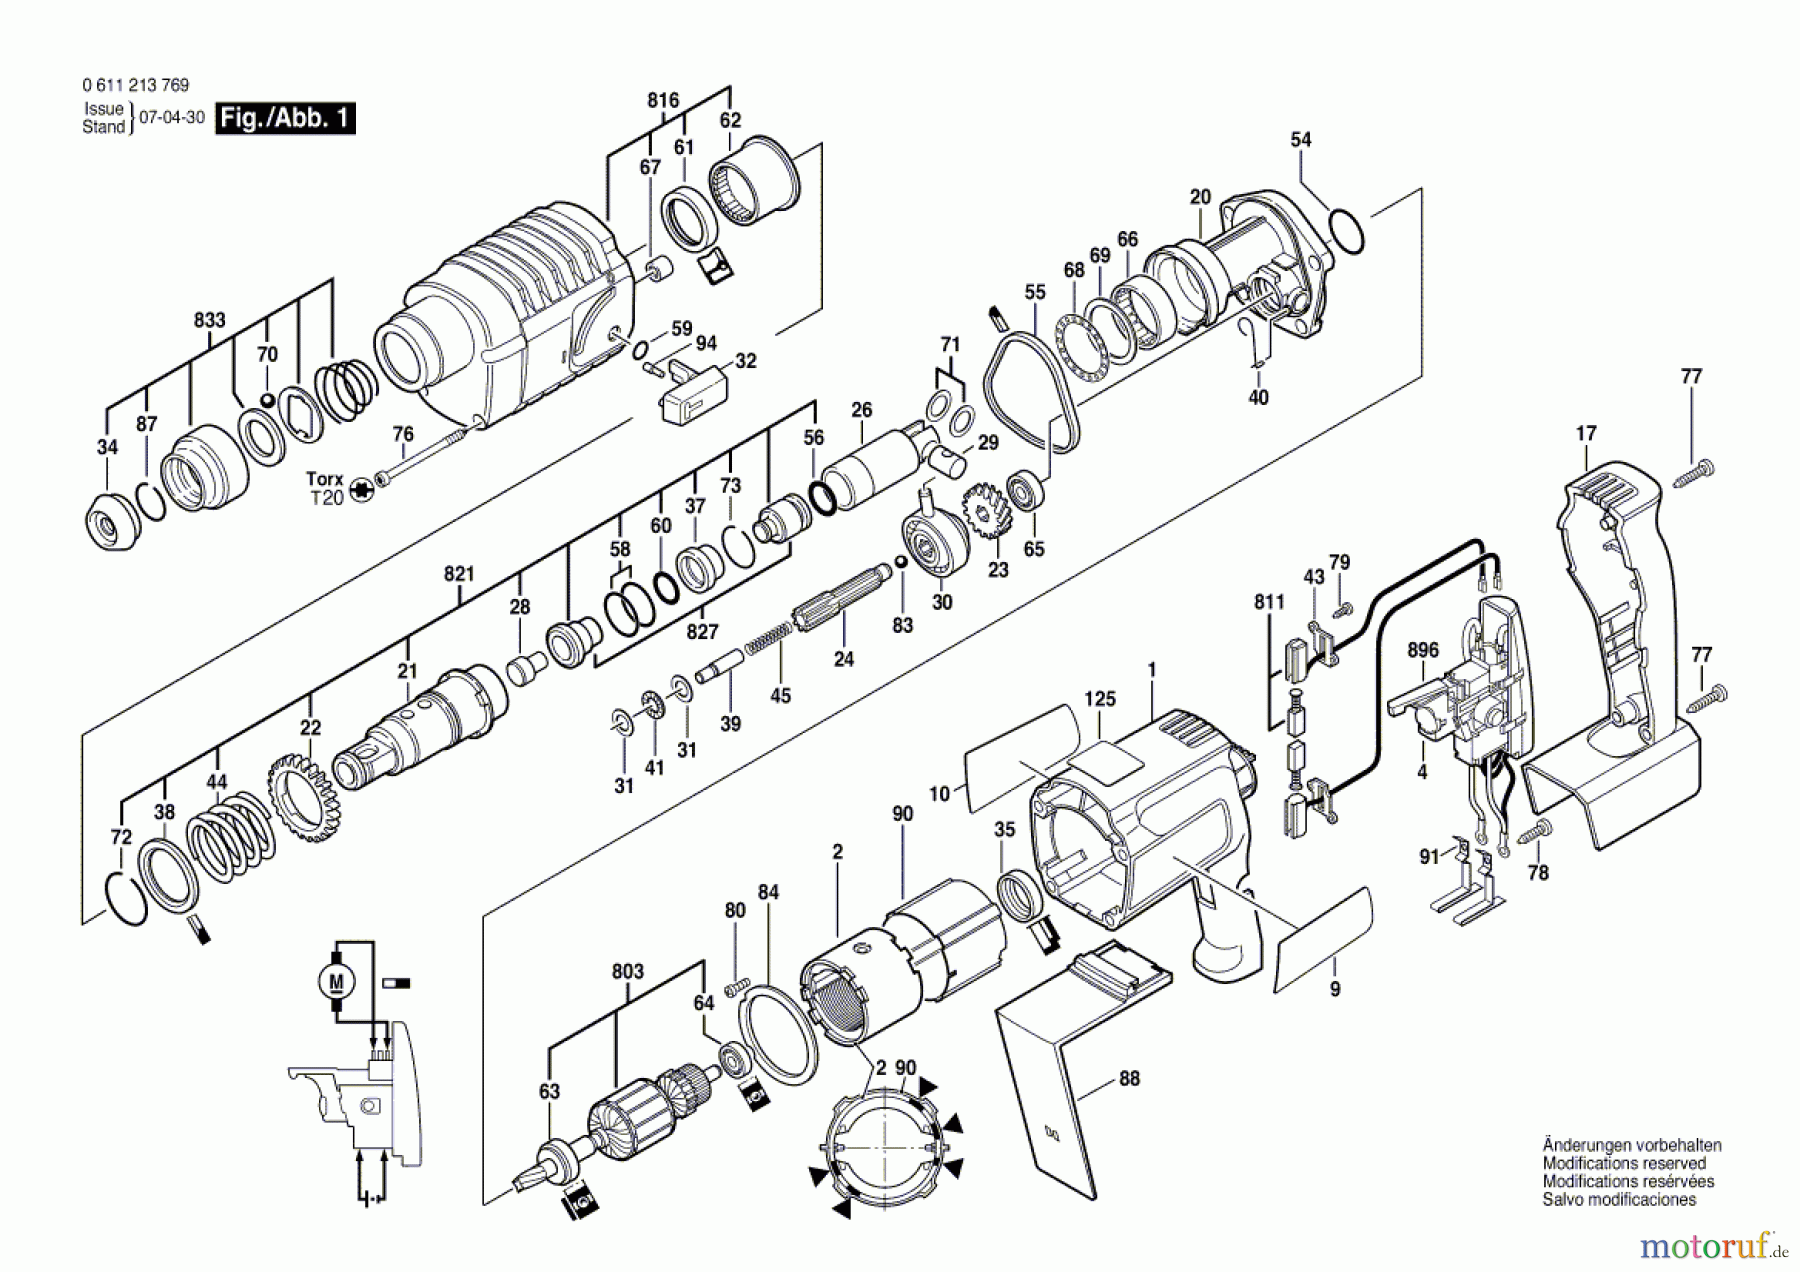  Bosch Akku Werkzeug Gw-Akku-Bohrhammer BBH 24 VRE Seite 1